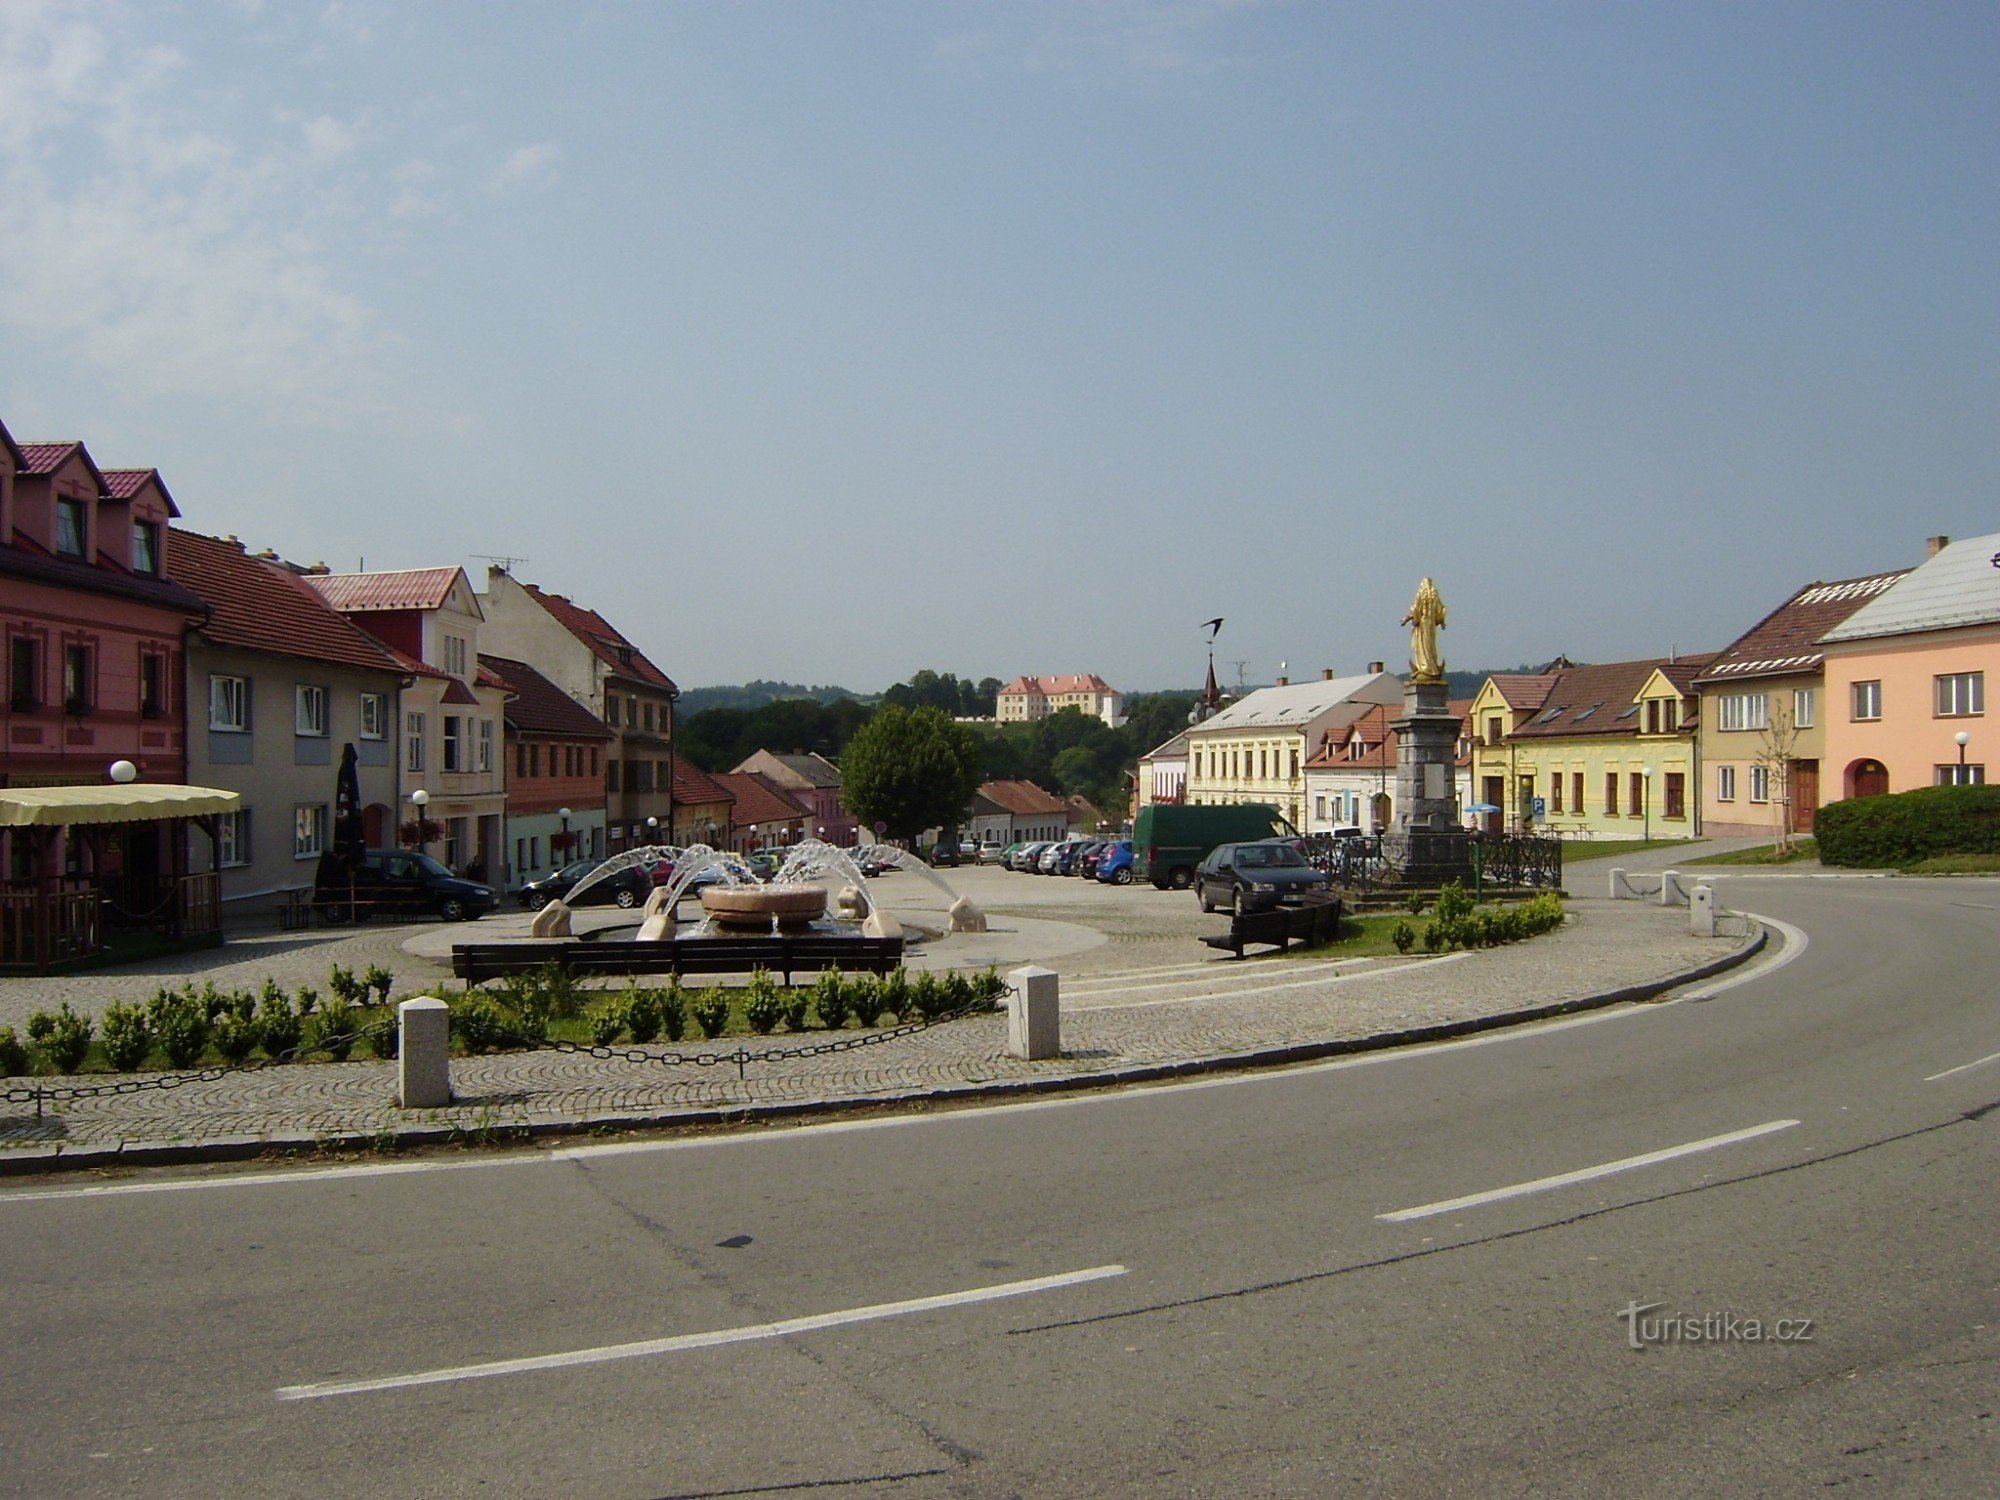 Kunštát - plaza y castillo